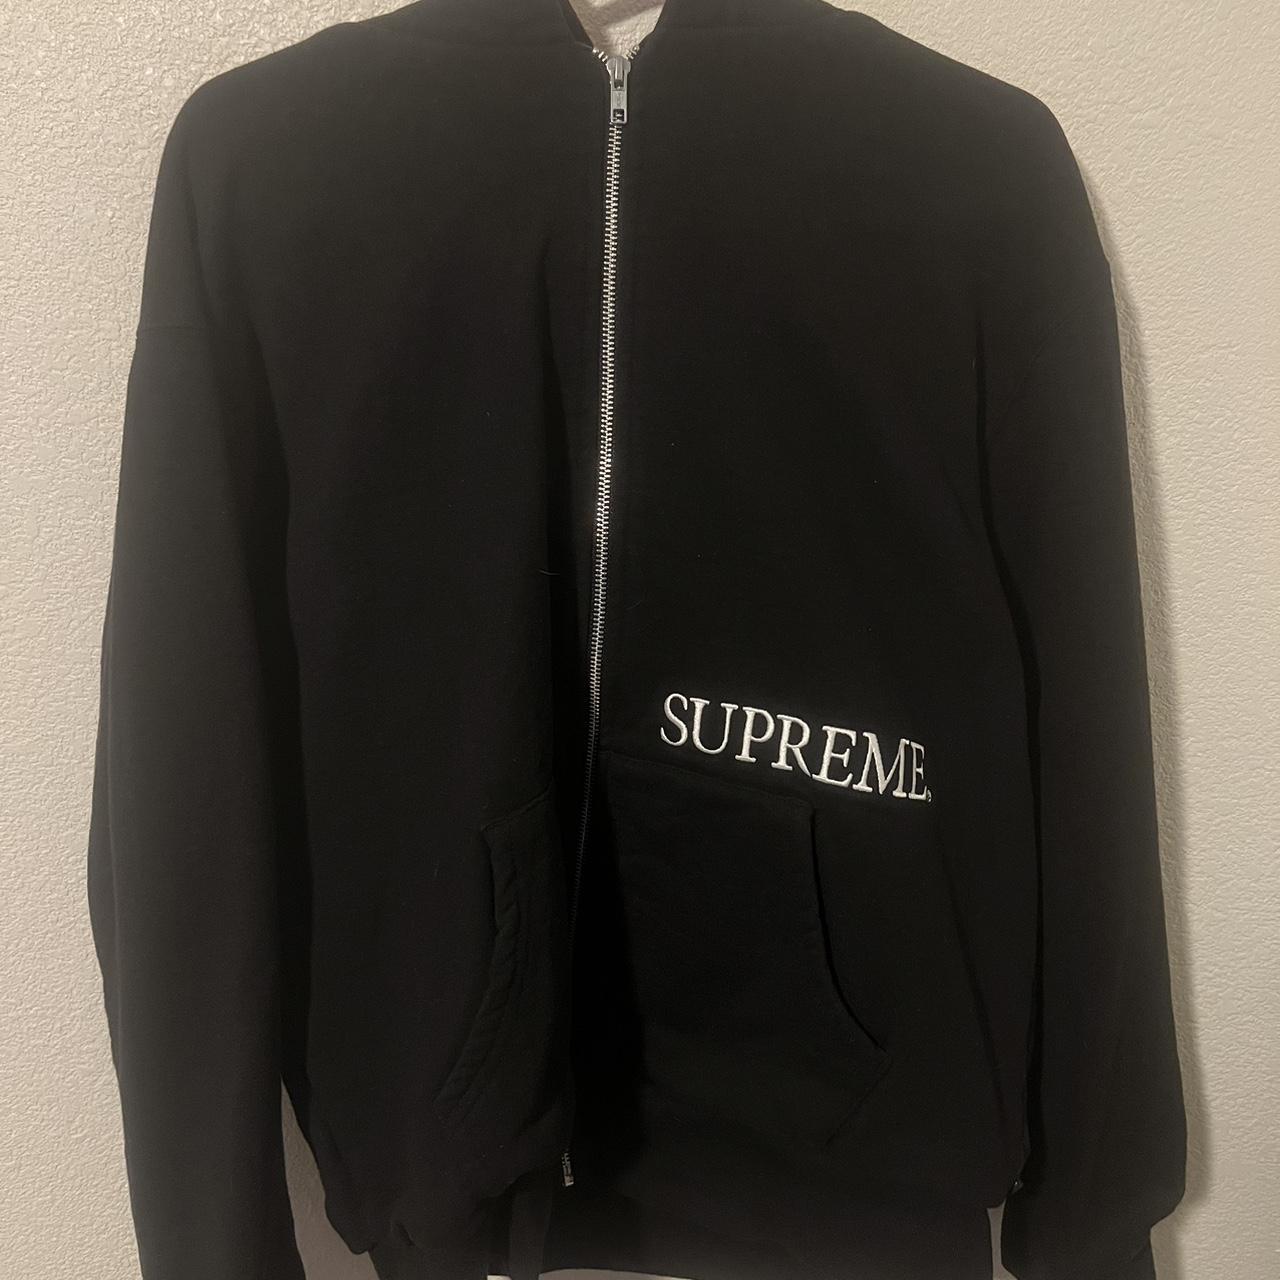 supreme thermal hoodie hoodie is brand new w/o tags - Depop